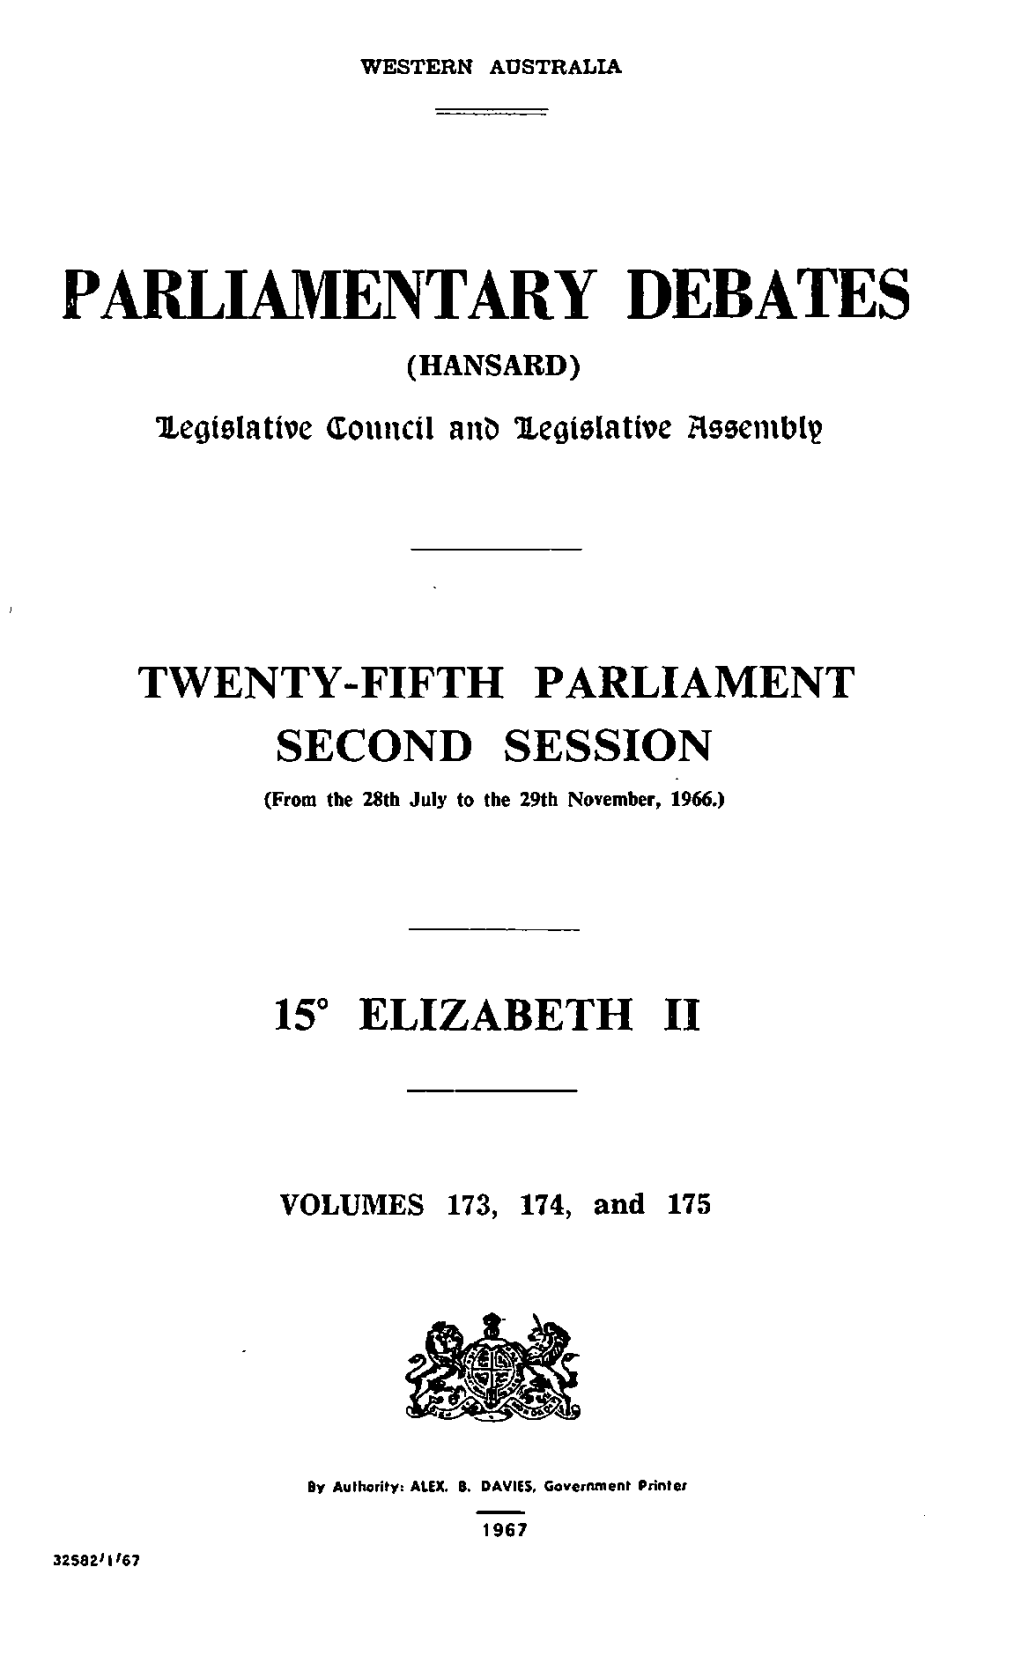 Hansard Index 1966